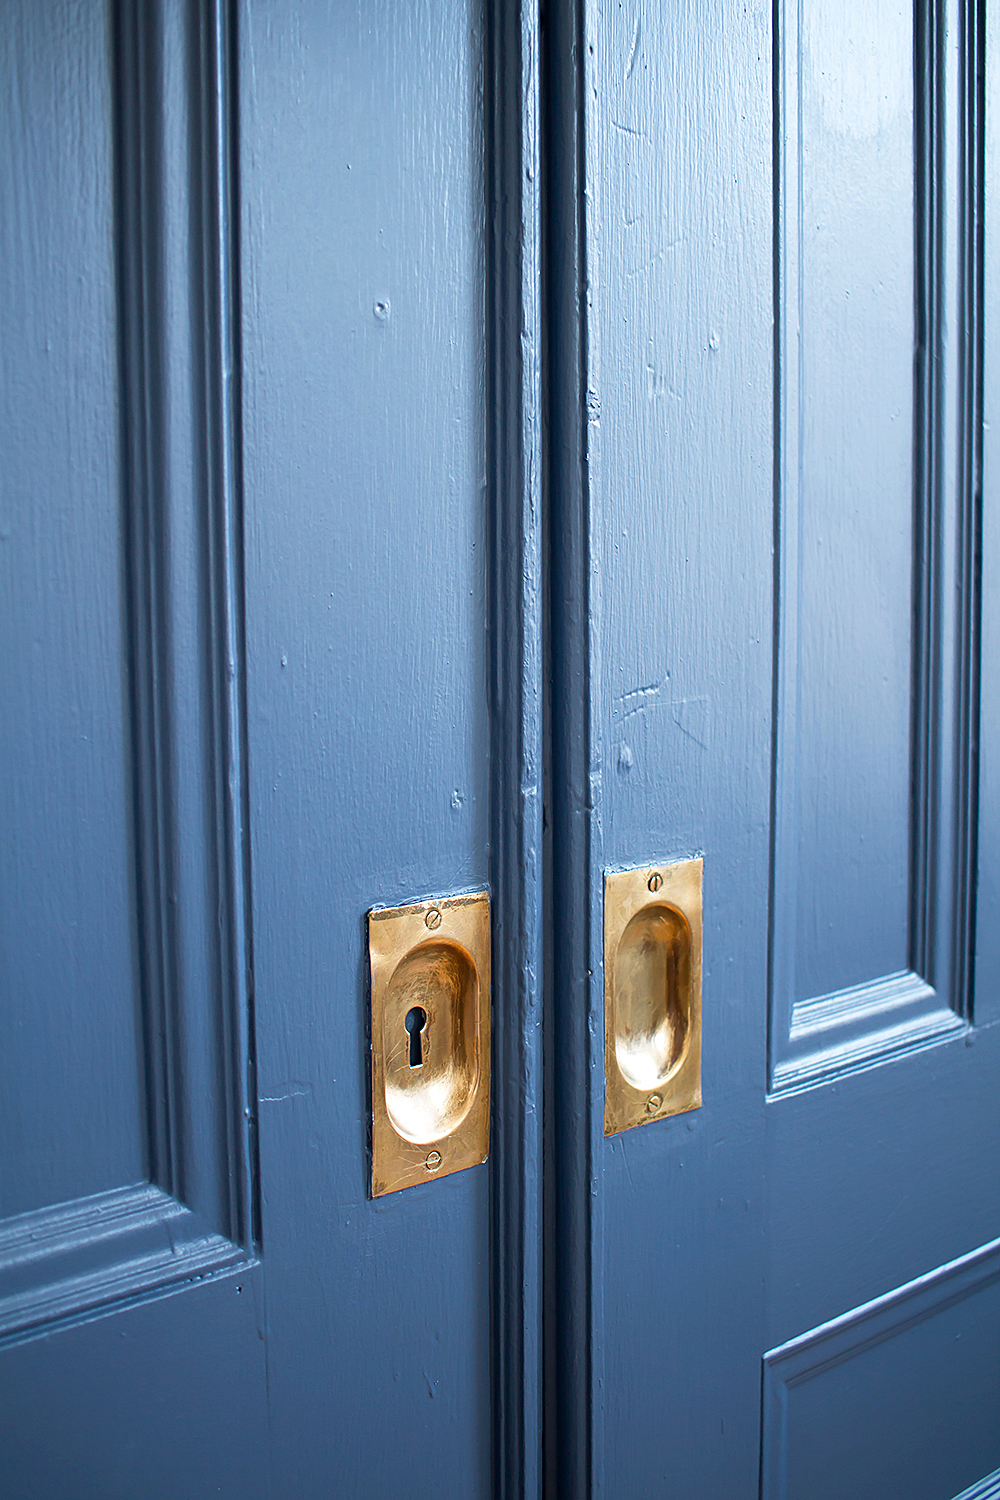 A Photo a Week Challenge: Blue (Doors)